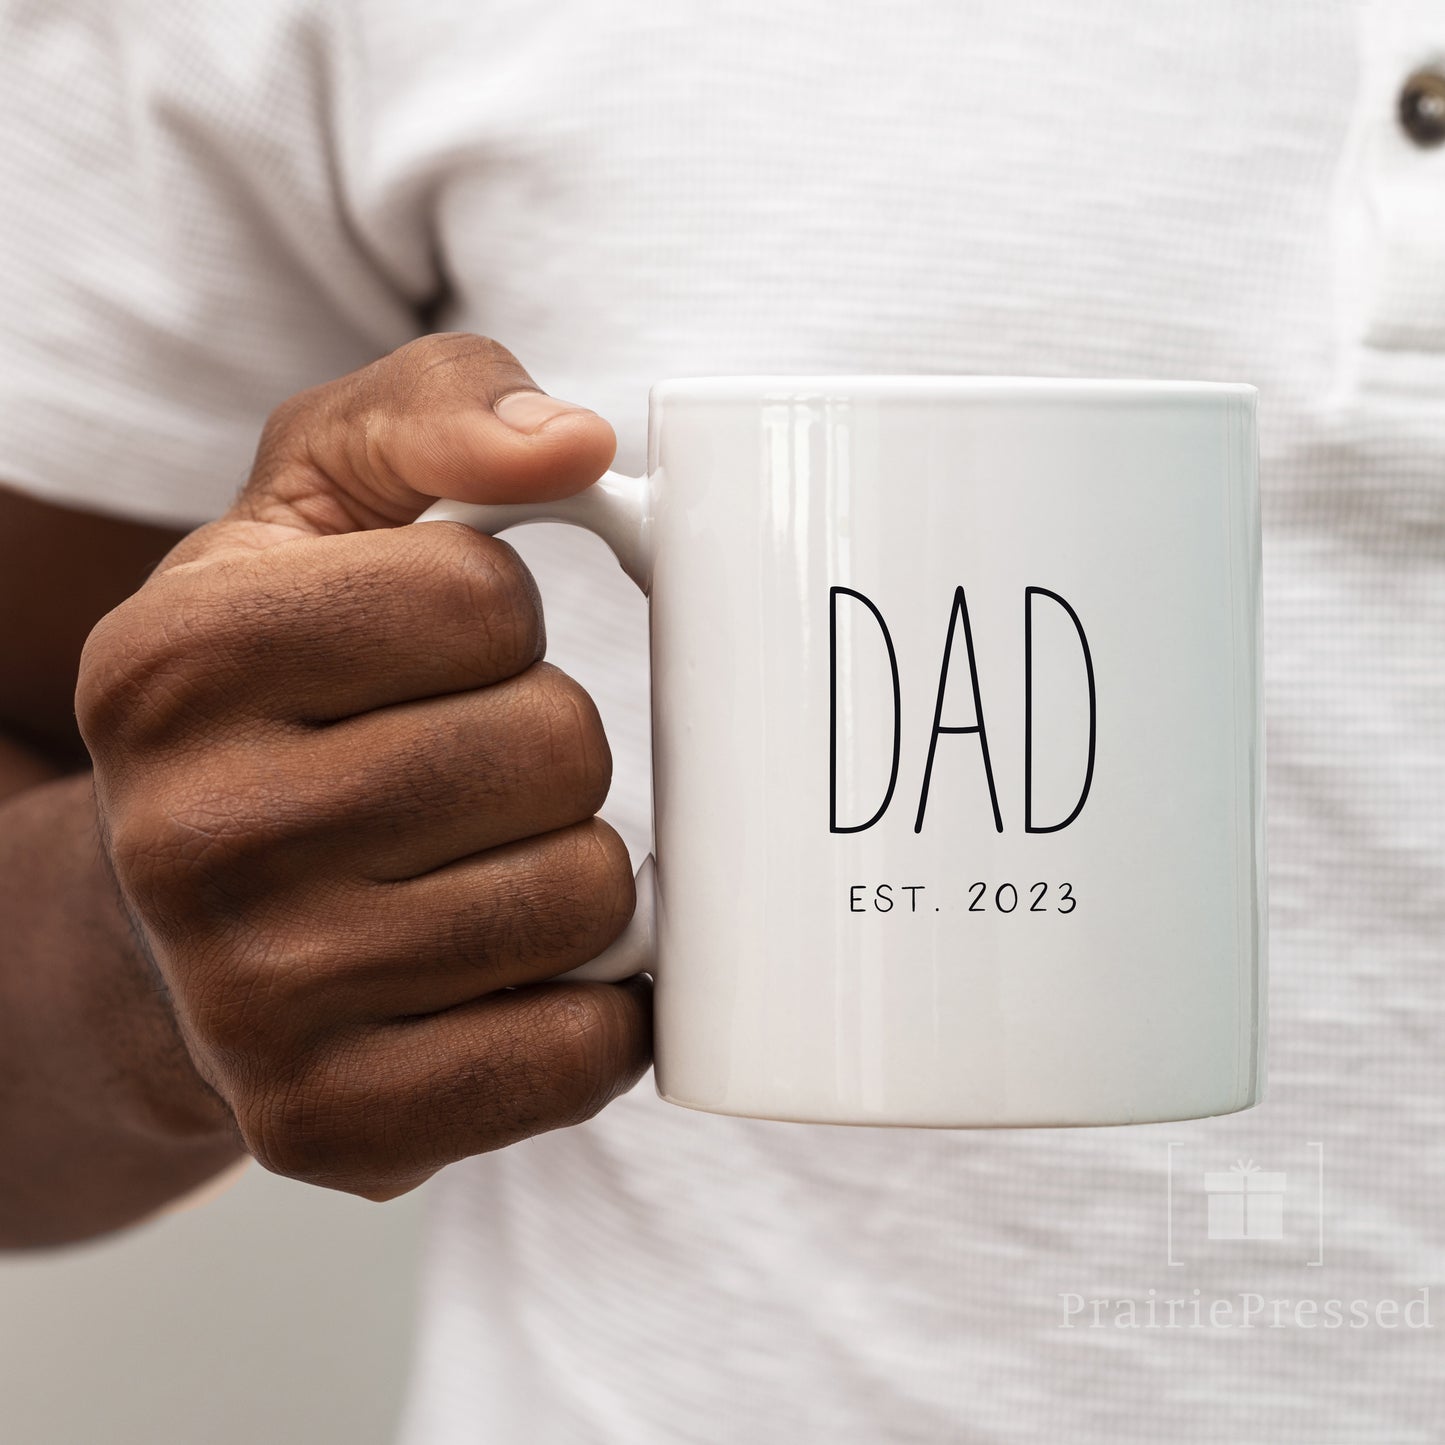 Dad EST 2024 Ceramic Mug - Minmalist